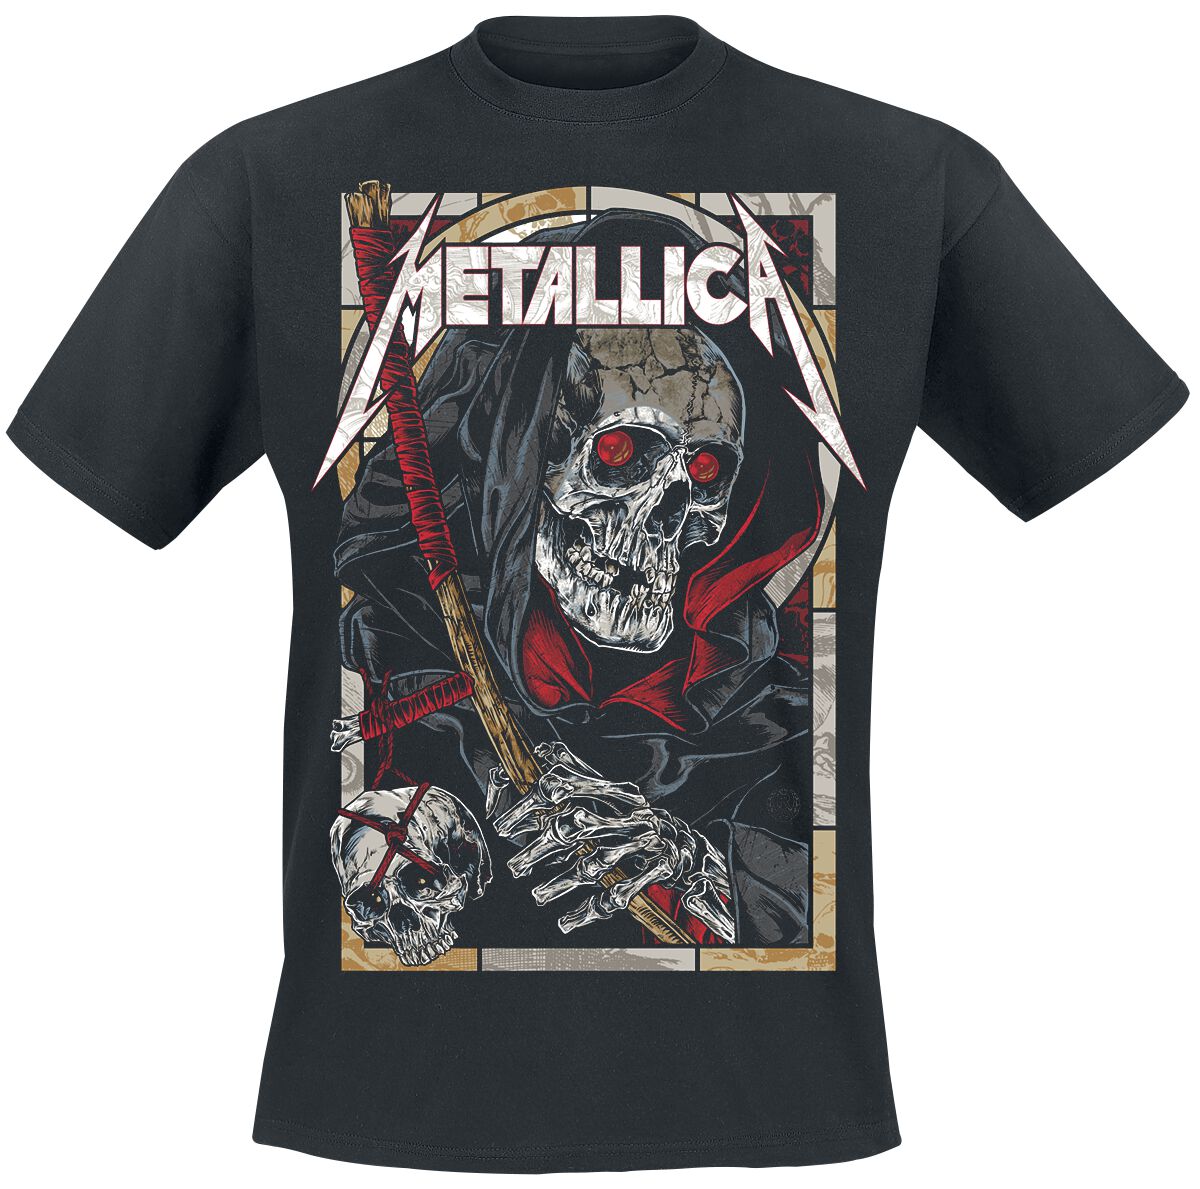 Metallica T-Shirt - Death Reaper - S bis 5XL - für Männer - Größe 3XL - schwarz  - Lizenziertes Merchandise!